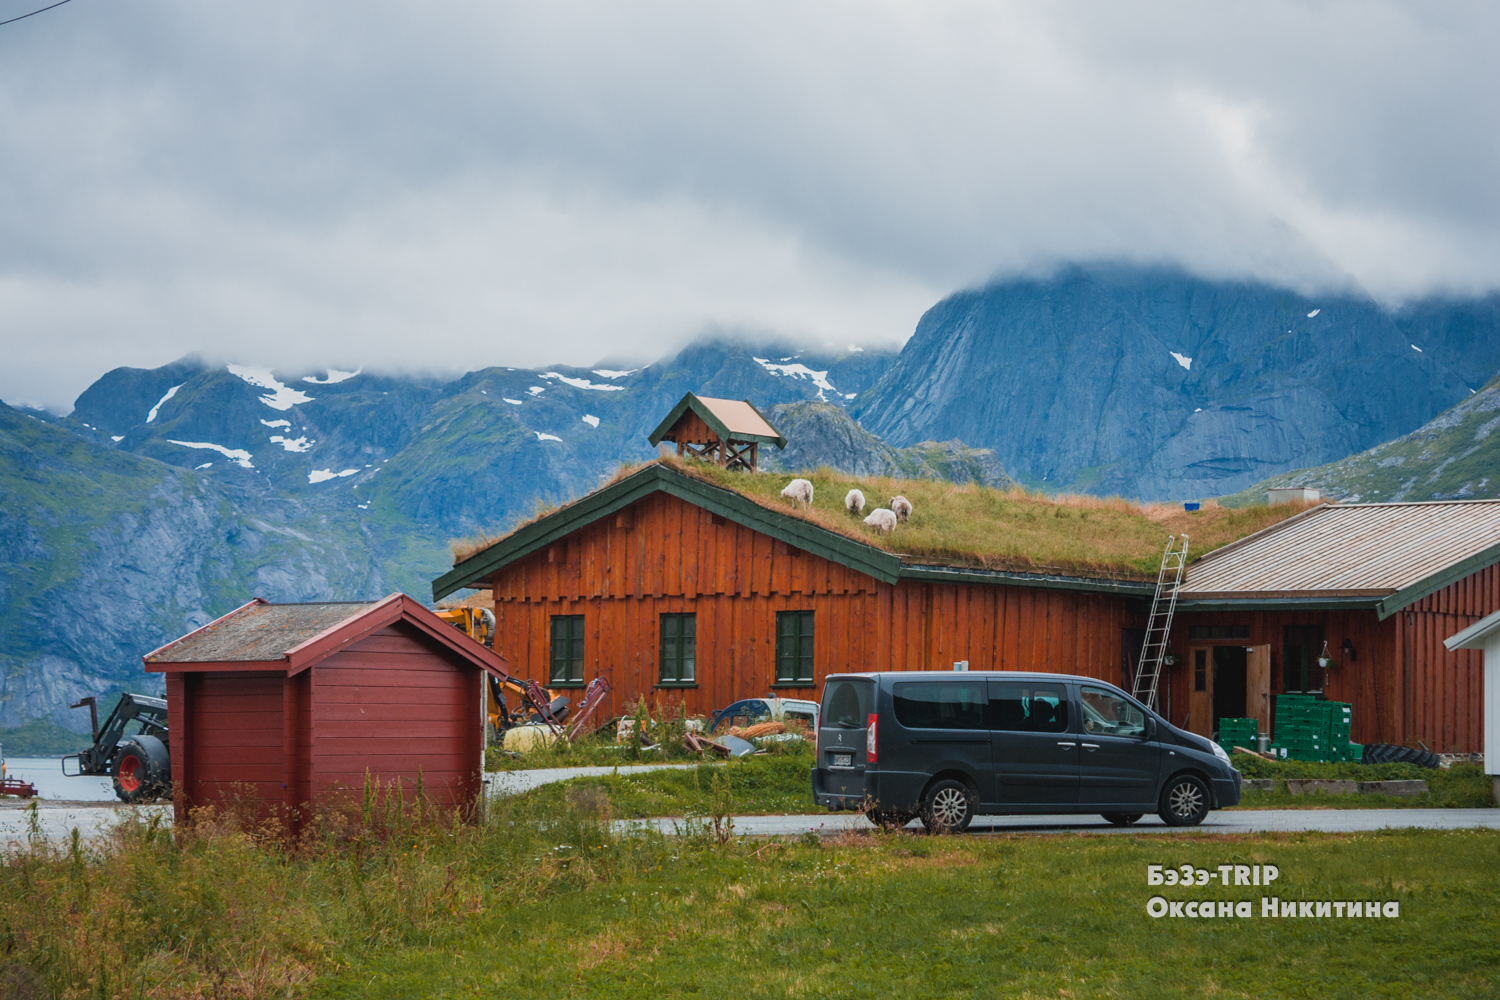 Овцы, которые пасутся на крыше дома. Зачем норвежцам трава на кровле и как над ними поэтому шутят соседи?:)6